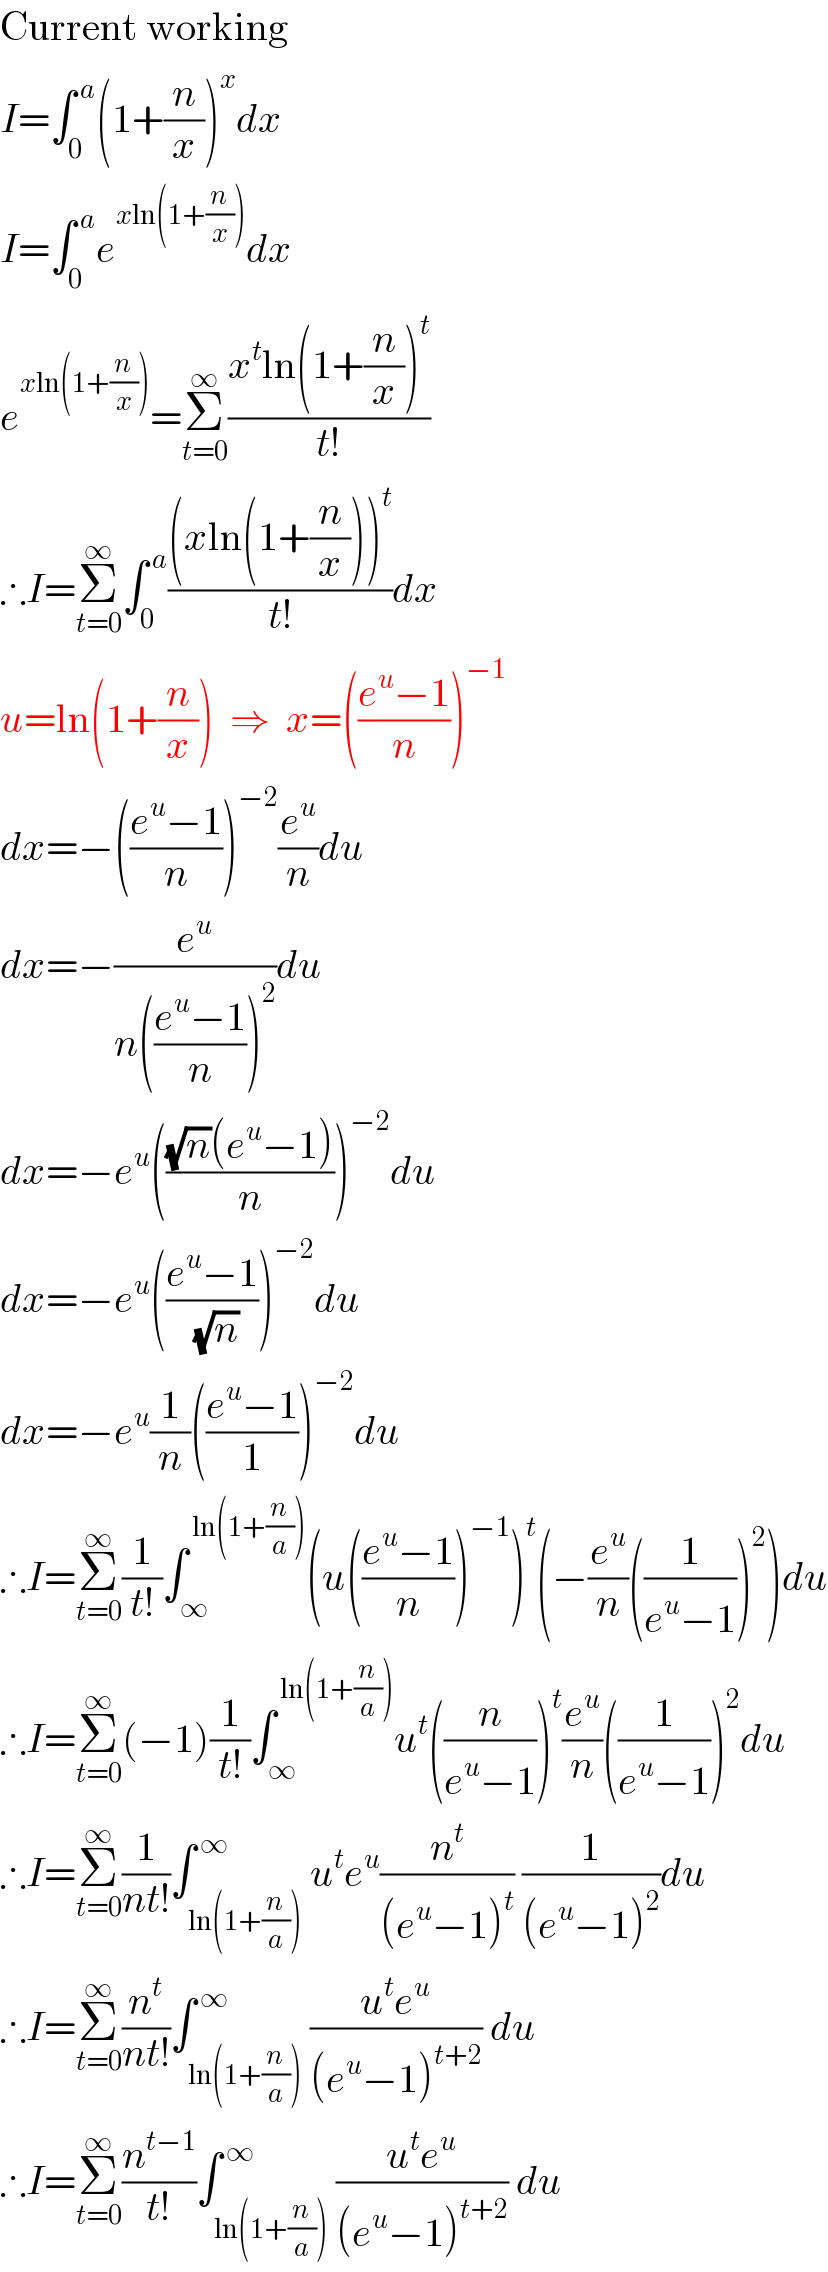 Current working  I=∫_0 ^( a) (1+(n/x))^x dx  I=∫_0 ^( a) e^(xln(1+(n/x))) dx  e^(xln(1+(n/x))) =Σ_(t=0) ^∞ ((x^t ln(1+(n/x))^t )/(t!))  ∴I=Σ_(t=0) ^∞ ∫_0 ^( a) (((xln(1+(n/x)))^t )/(t!))dx  u=ln(1+(n/x))  ⇒  x=(((e^u −1)/n))^(−1)   dx=−(((e^u −1)/n))^(−2) (e^u /n)du  dx=−(e^u /(n(((e^u −1)/n))^2 ))du  dx=−e^u ((((√n)(e^u −1))/n))^(−2) du  dx=−e^u (((e^u −1)/(√n)))^(−2) du  dx=−e^u (1/n)(((e^u −1)/1))^(−2) du  ∴I=Σ_(t=0) ^∞ (1/(t!))∫_∞ ^( ln(1+(n/a))) (u(((e^u −1)/n))^(−1) )^t (−(e^u /n)((1/(e^u −1)))^2 )du  ∴I=Σ_(t=0) ^∞ (−1)(1/(t!))∫_∞ ^( ln(1+(n/a))) u^t ((n/(e^u −1)))^t (e^u /n)((1/(e^u −1)))^2 du  ∴I=Σ_(t=0) ^∞ (1/(nt!))∫_(ln(1+(n/a))) ^( ∞) u^t e^u (n^t /((e^u −1)^t )) (1/((e^u −1)^2 ))du  ∴I=Σ_(t=0) ^∞ (n^t /(nt!))∫_(ln(1+(n/a))) ^( ∞) ((u^t e^u )/((e^u −1)^(t+2) )) du  ∴I=Σ_(t=0) ^∞ (n^(t−1) /(t!))∫_(ln(1+(n/a))) ^( ∞) ((u^t e^u )/((e^u −1)^(t+2) )) du  